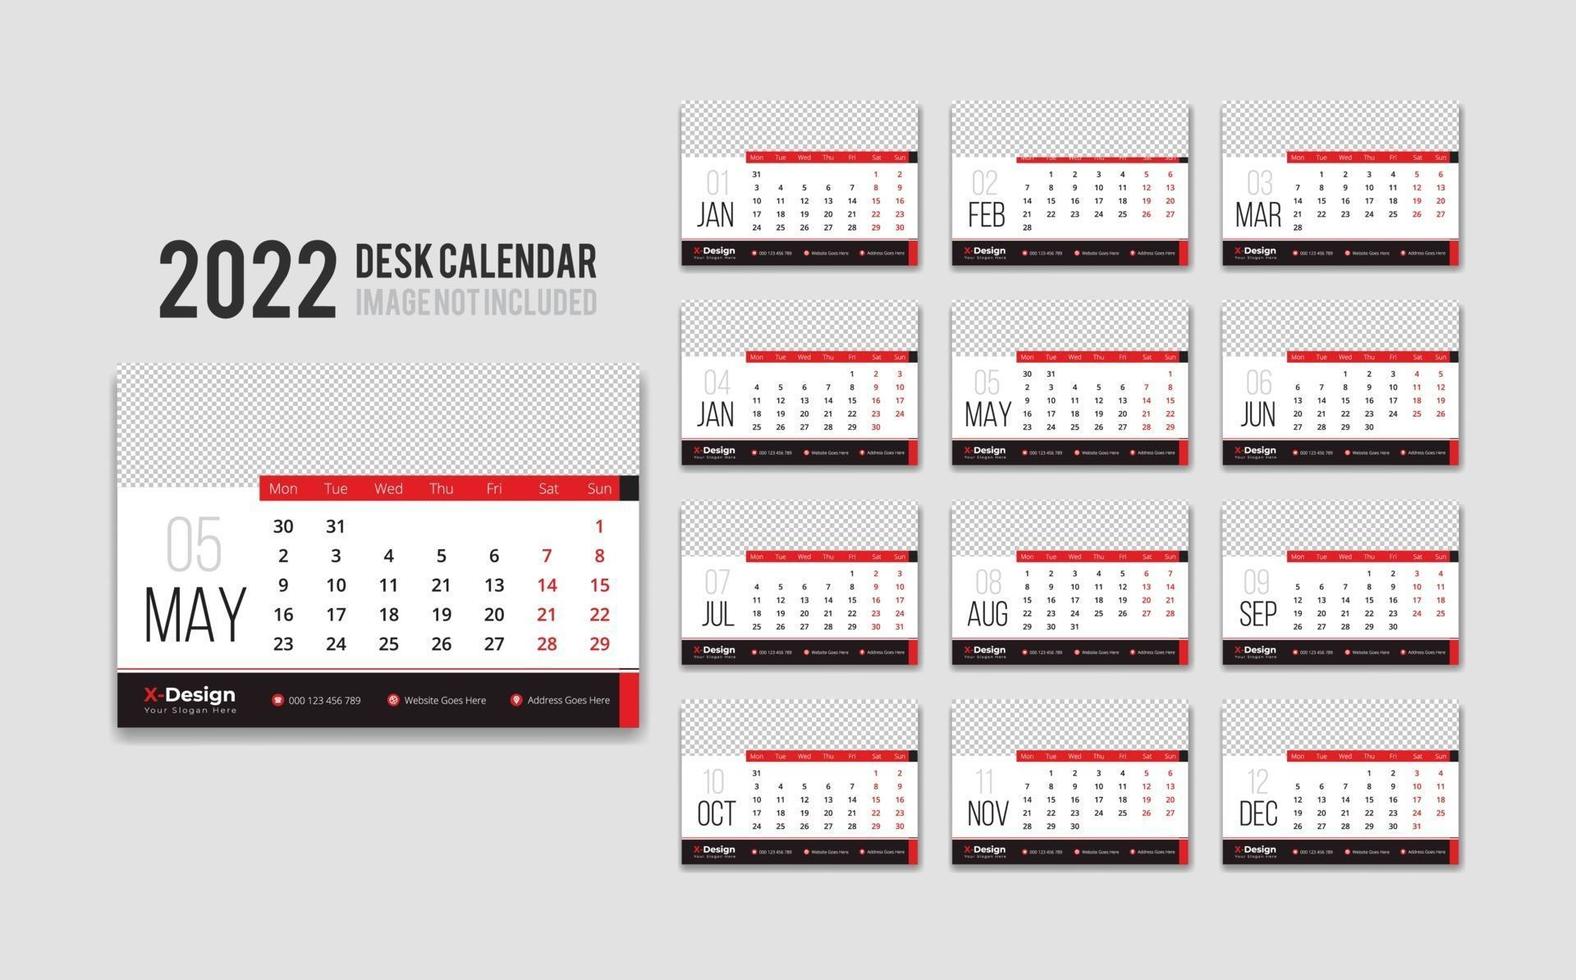 de calendario de escritorio lista para imprimir para el año 2022, calendario de oficina mensual de escritorio 2022 la semana comienza el lunes, planificador anual 3572378 Vector en Vecteezy